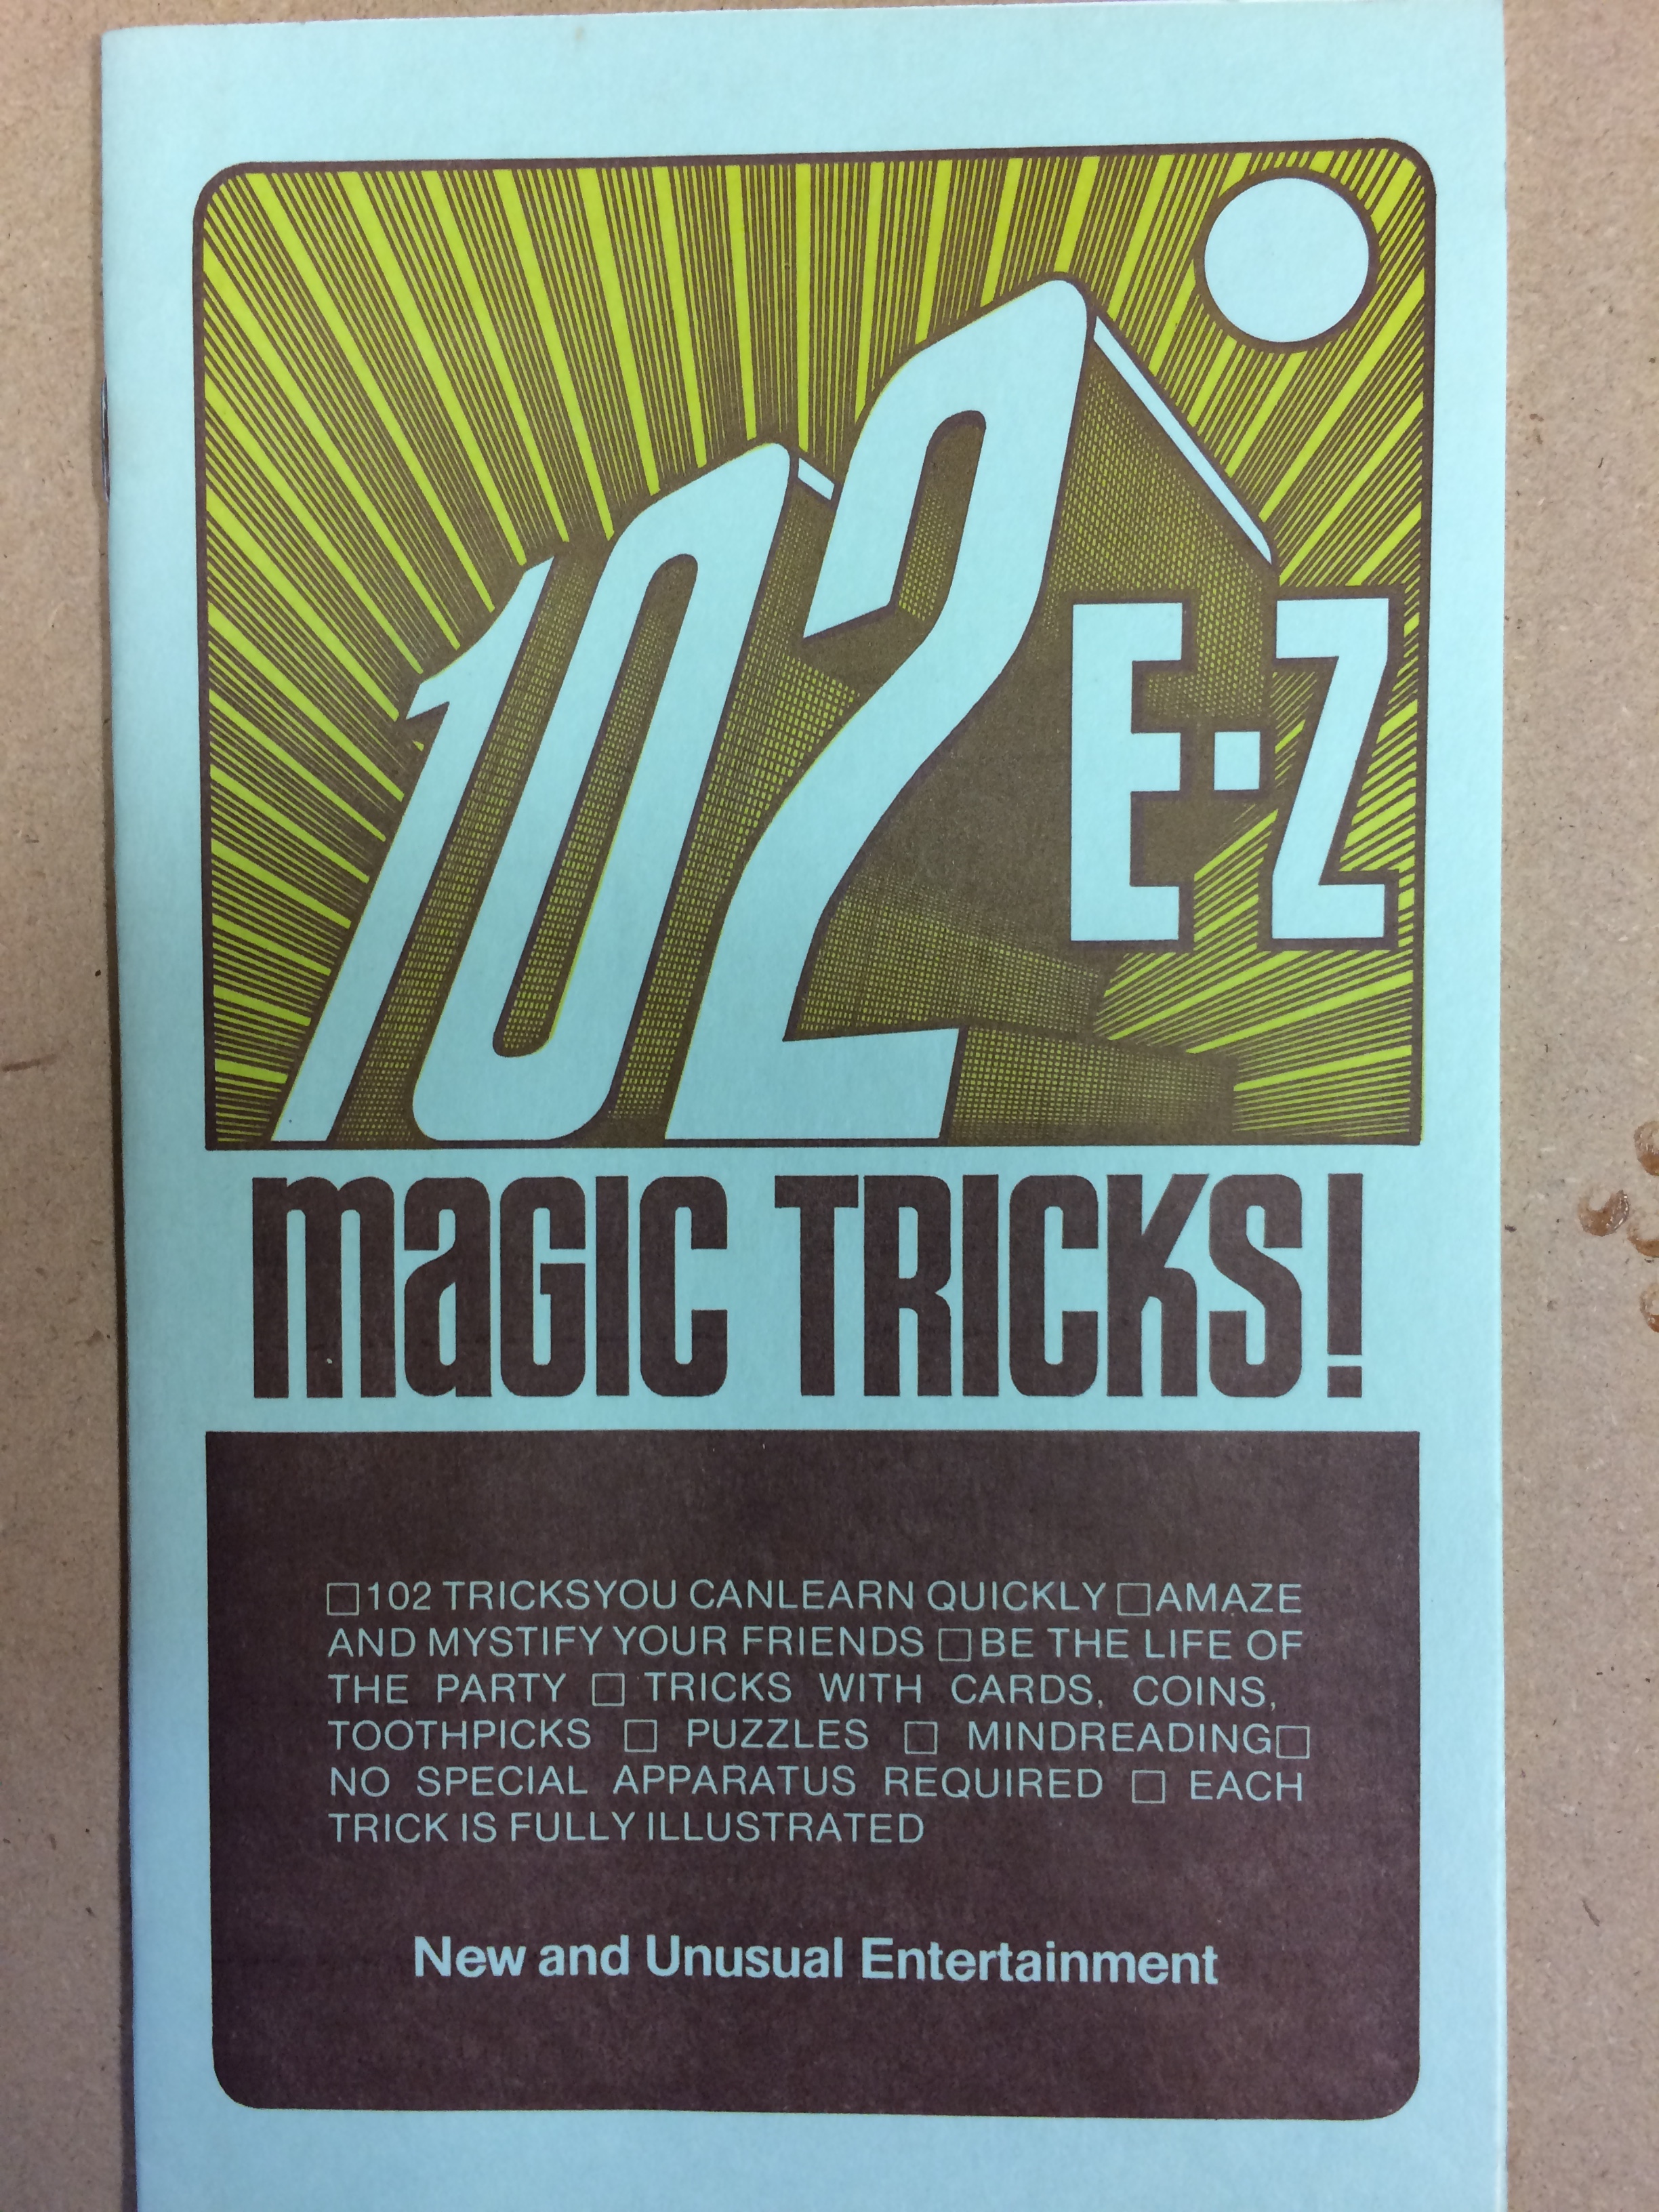 magic trick ebooks